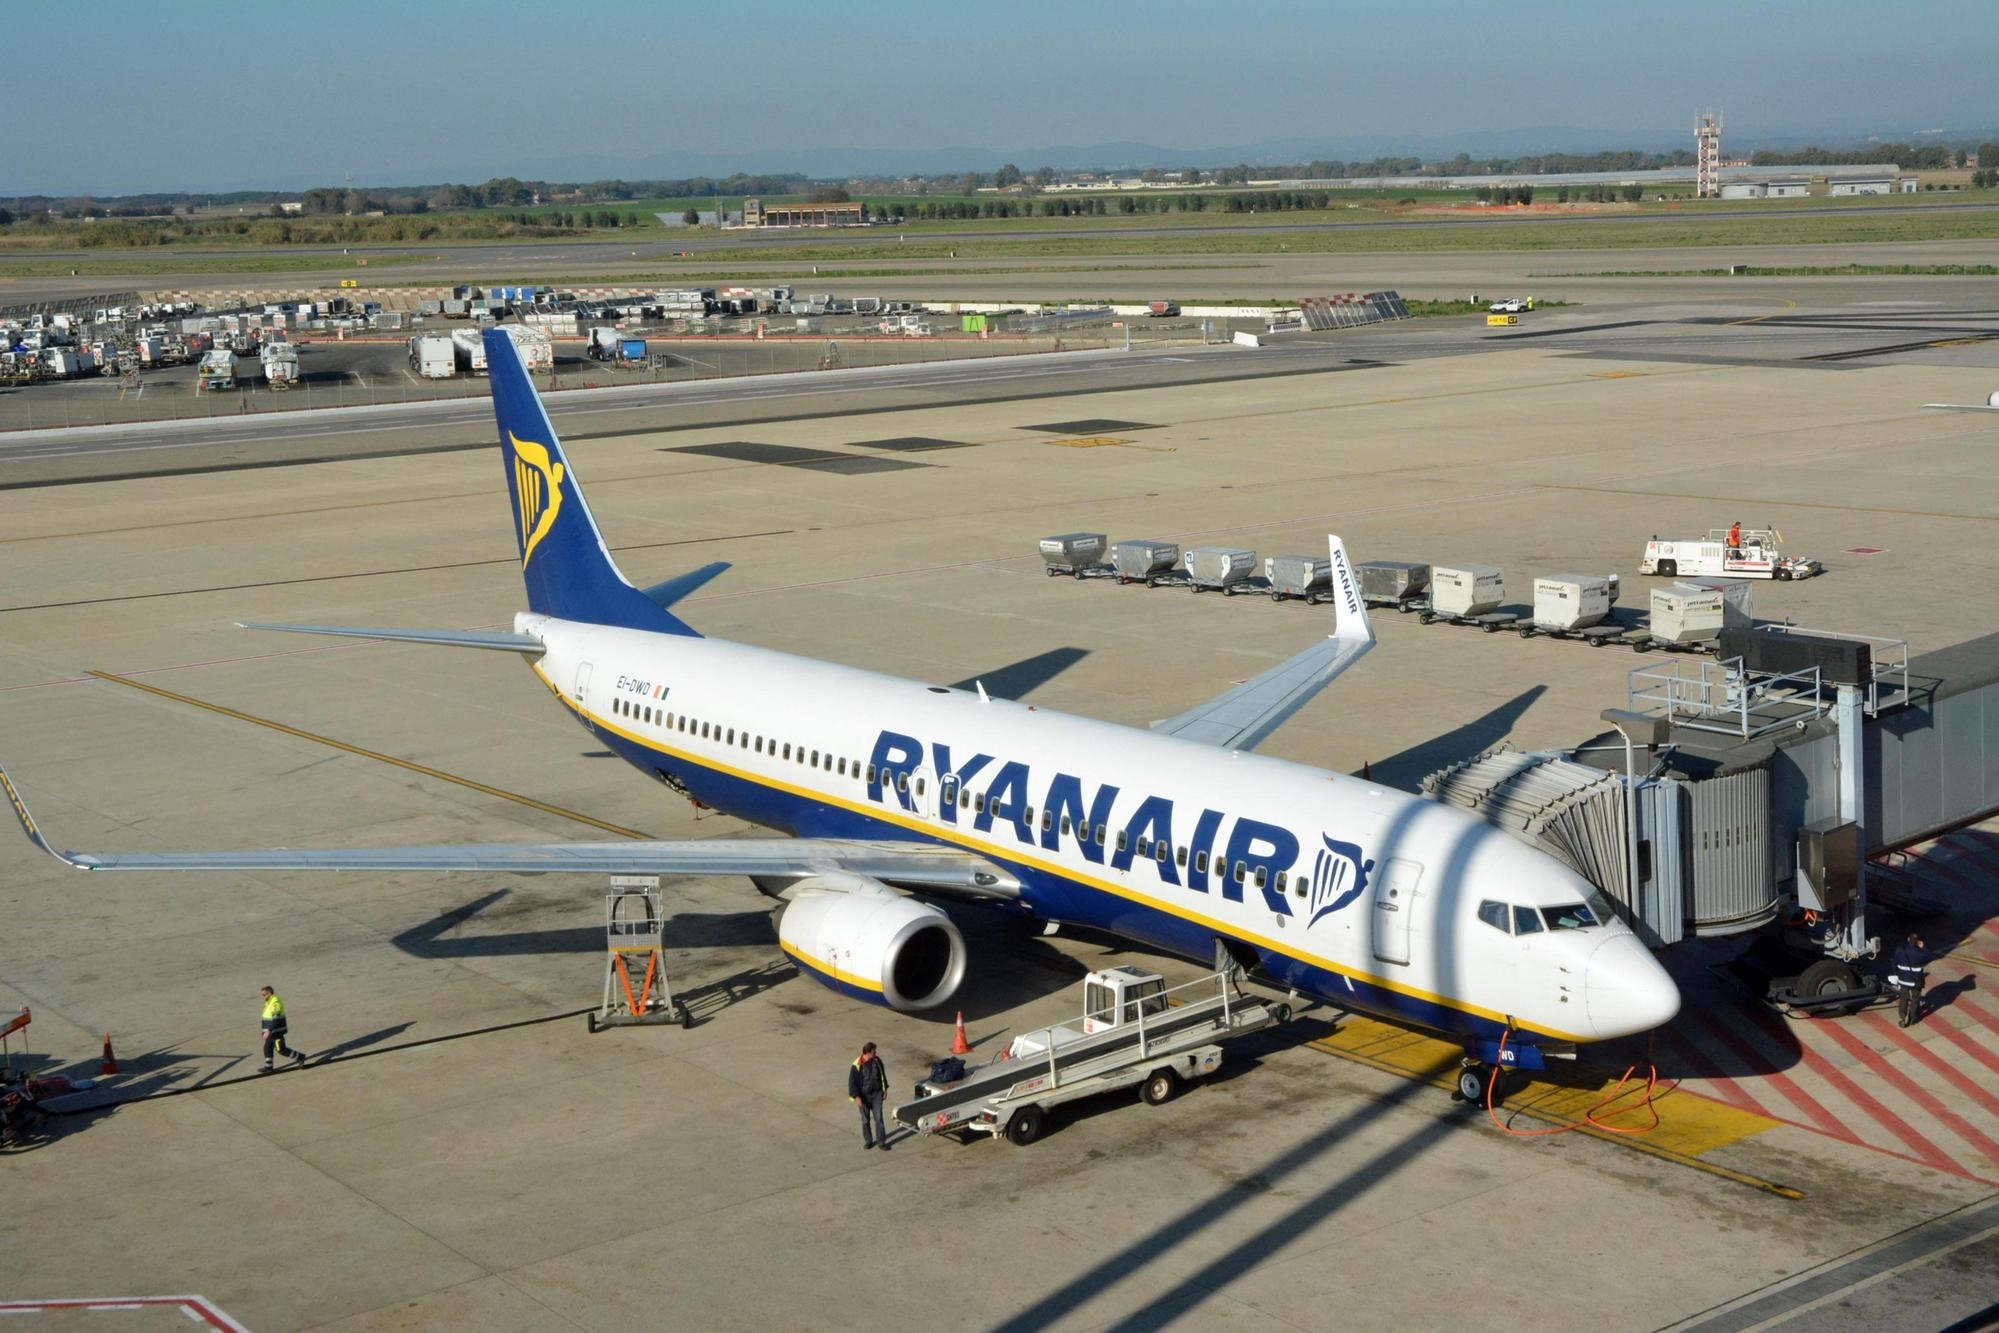 Un aereo della Ryanair in parcheggio a Fiumicino, in una immagine di archivio.  ANSA / TELENEWS